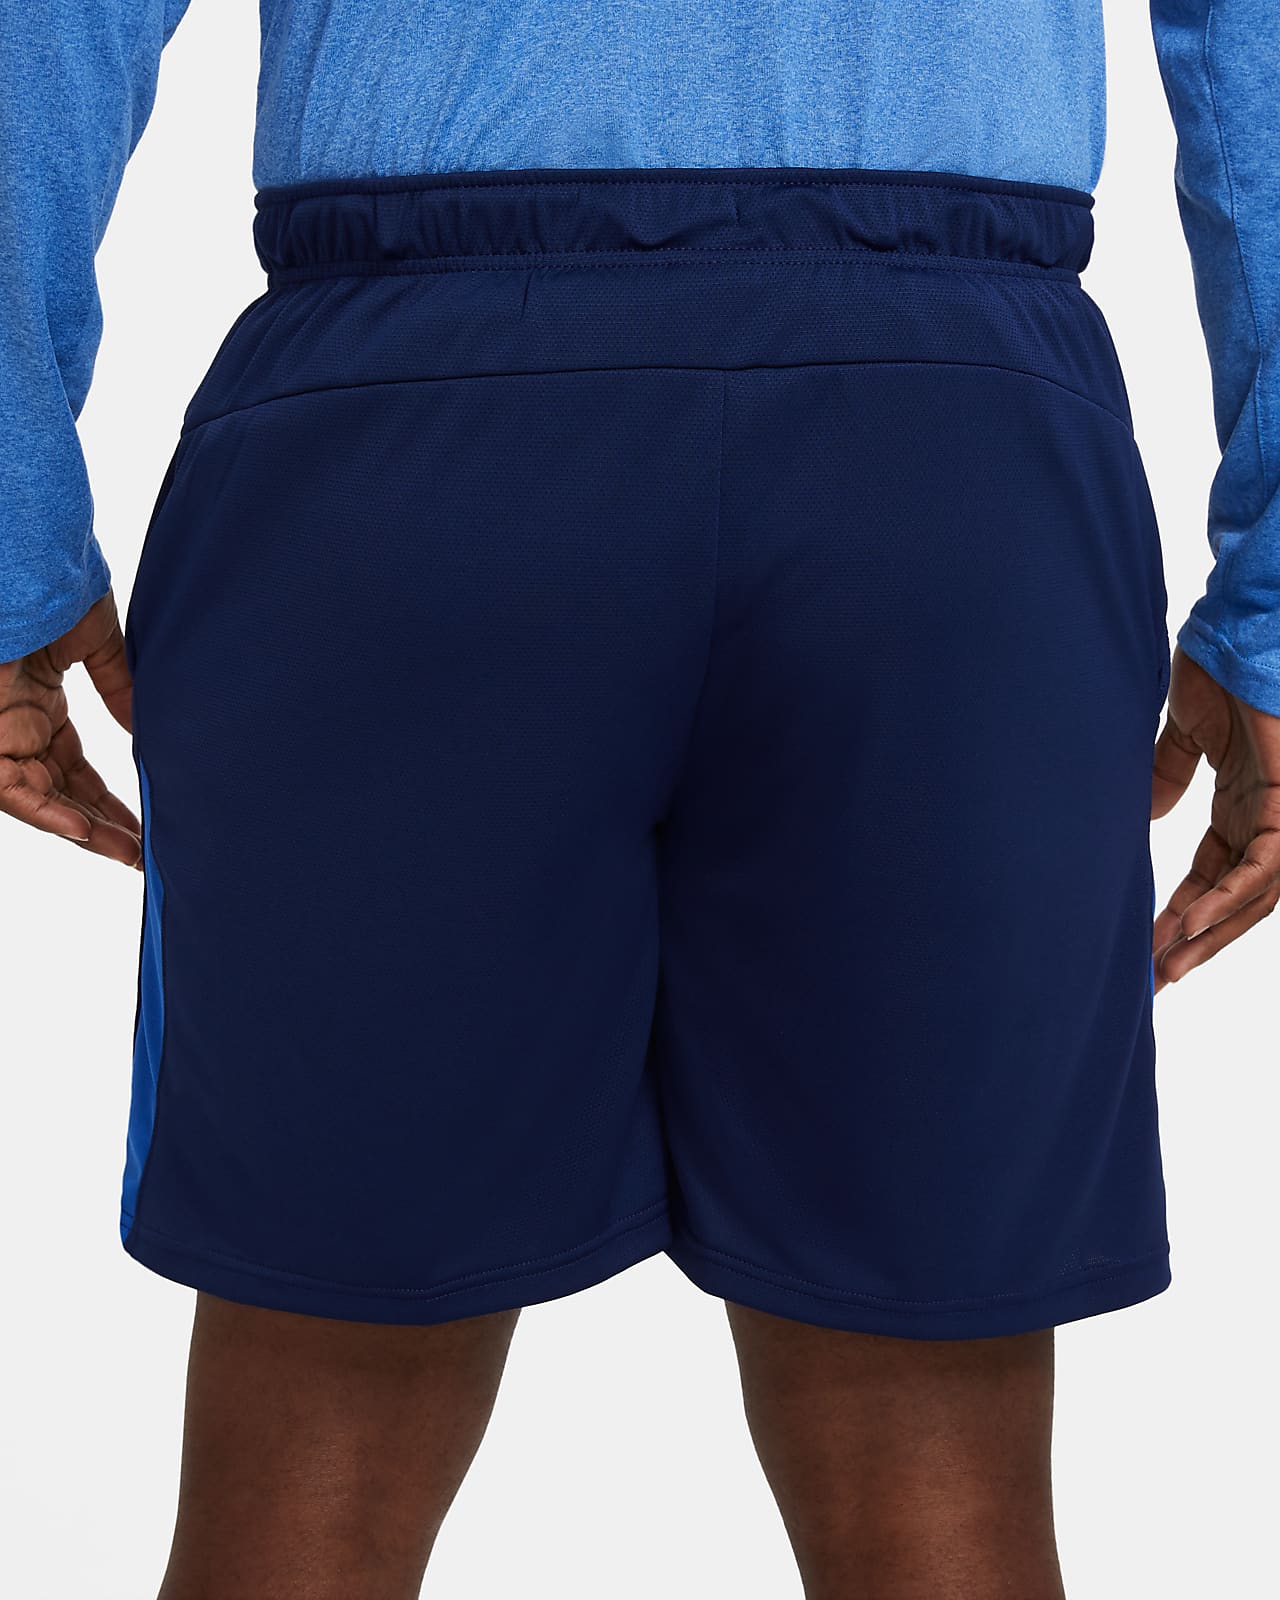 nike mens blue shorts